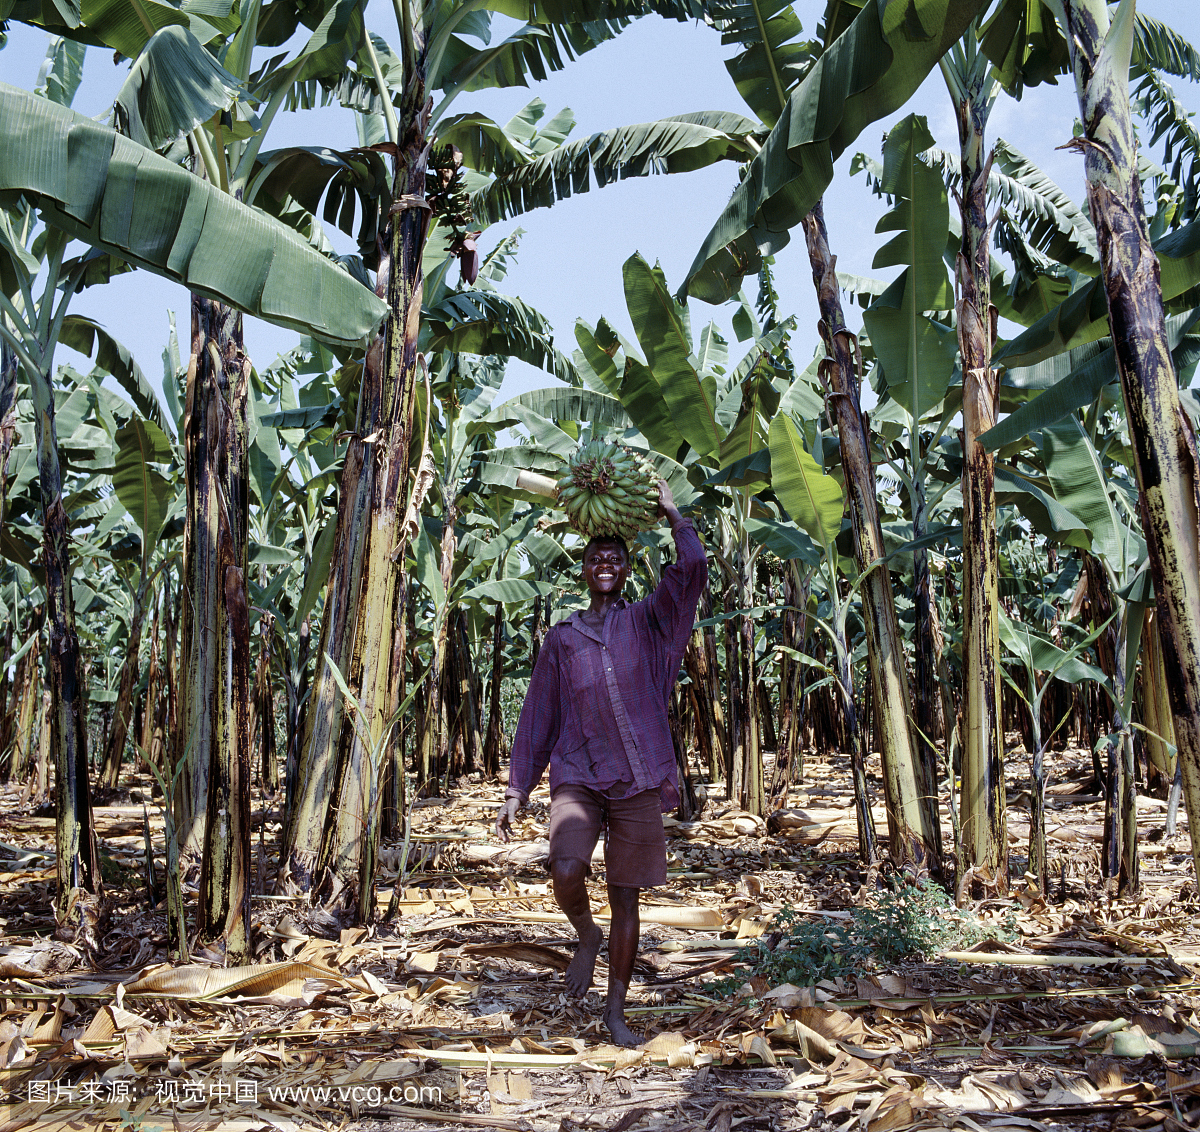 香蕉种植在乌干达各地。原本是东南亚地区,中